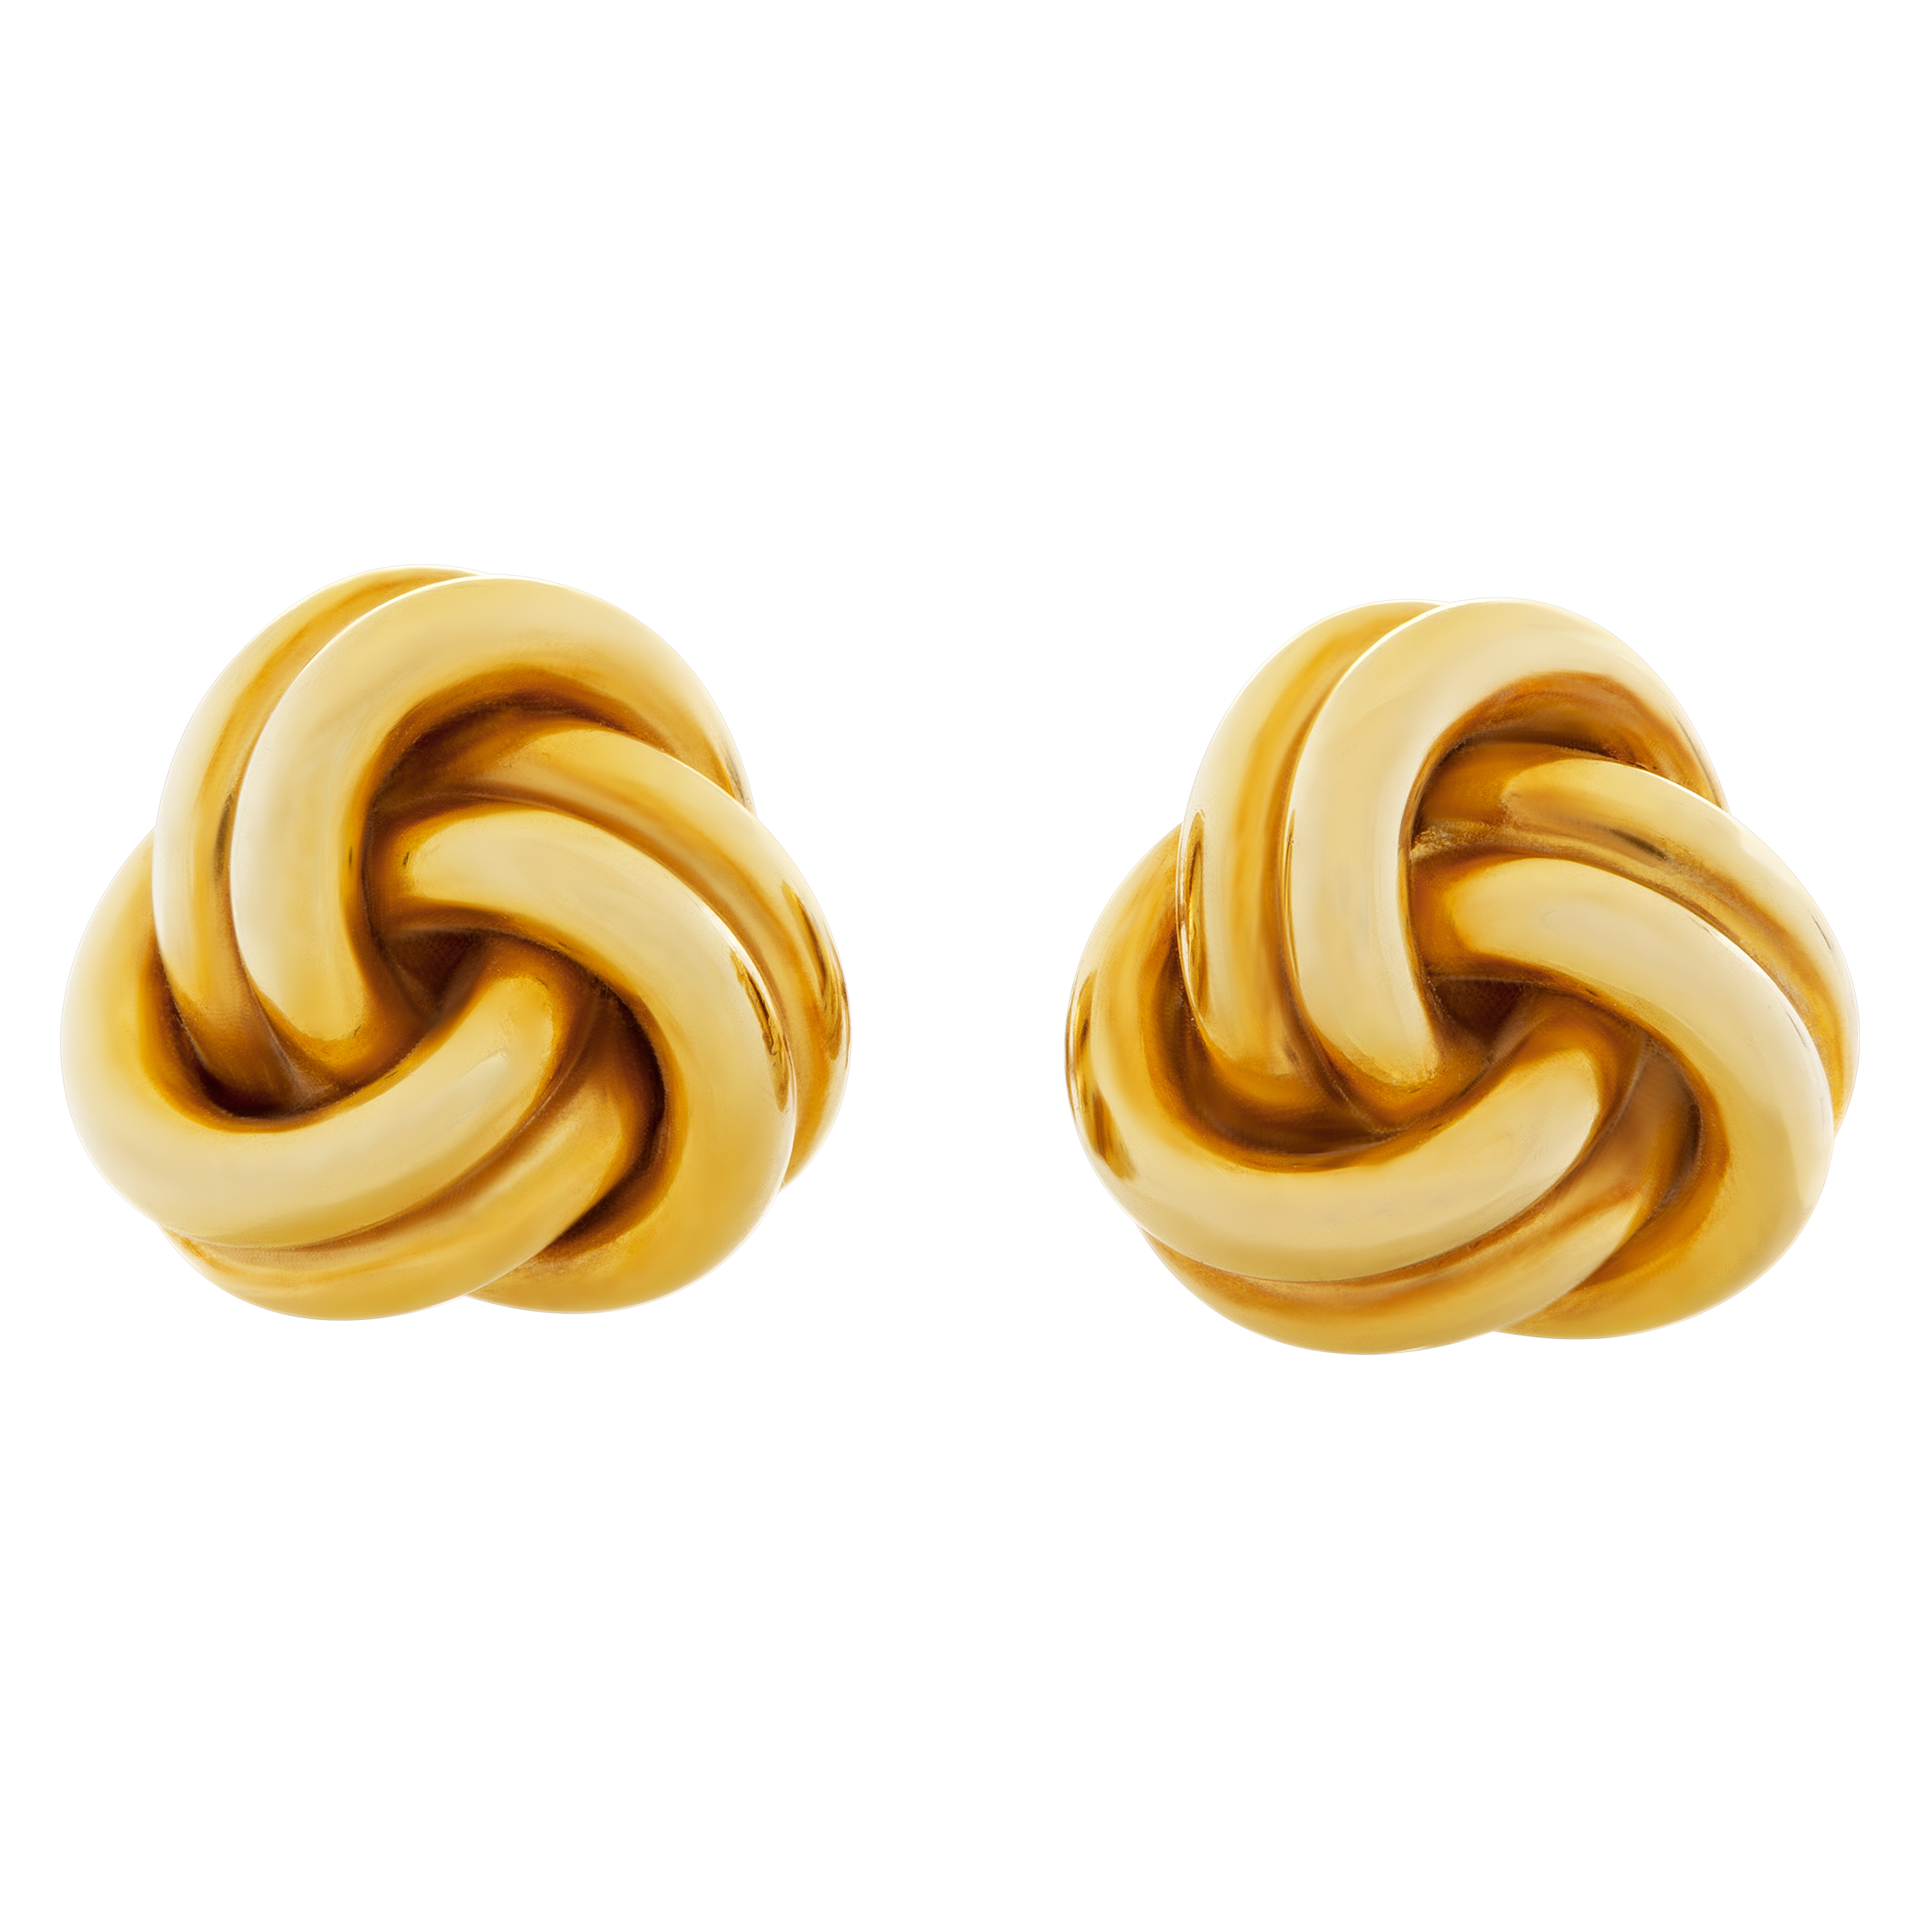 Tiffany & Co. Love Knot earrings in 18k yellow gold. 10mm diameter